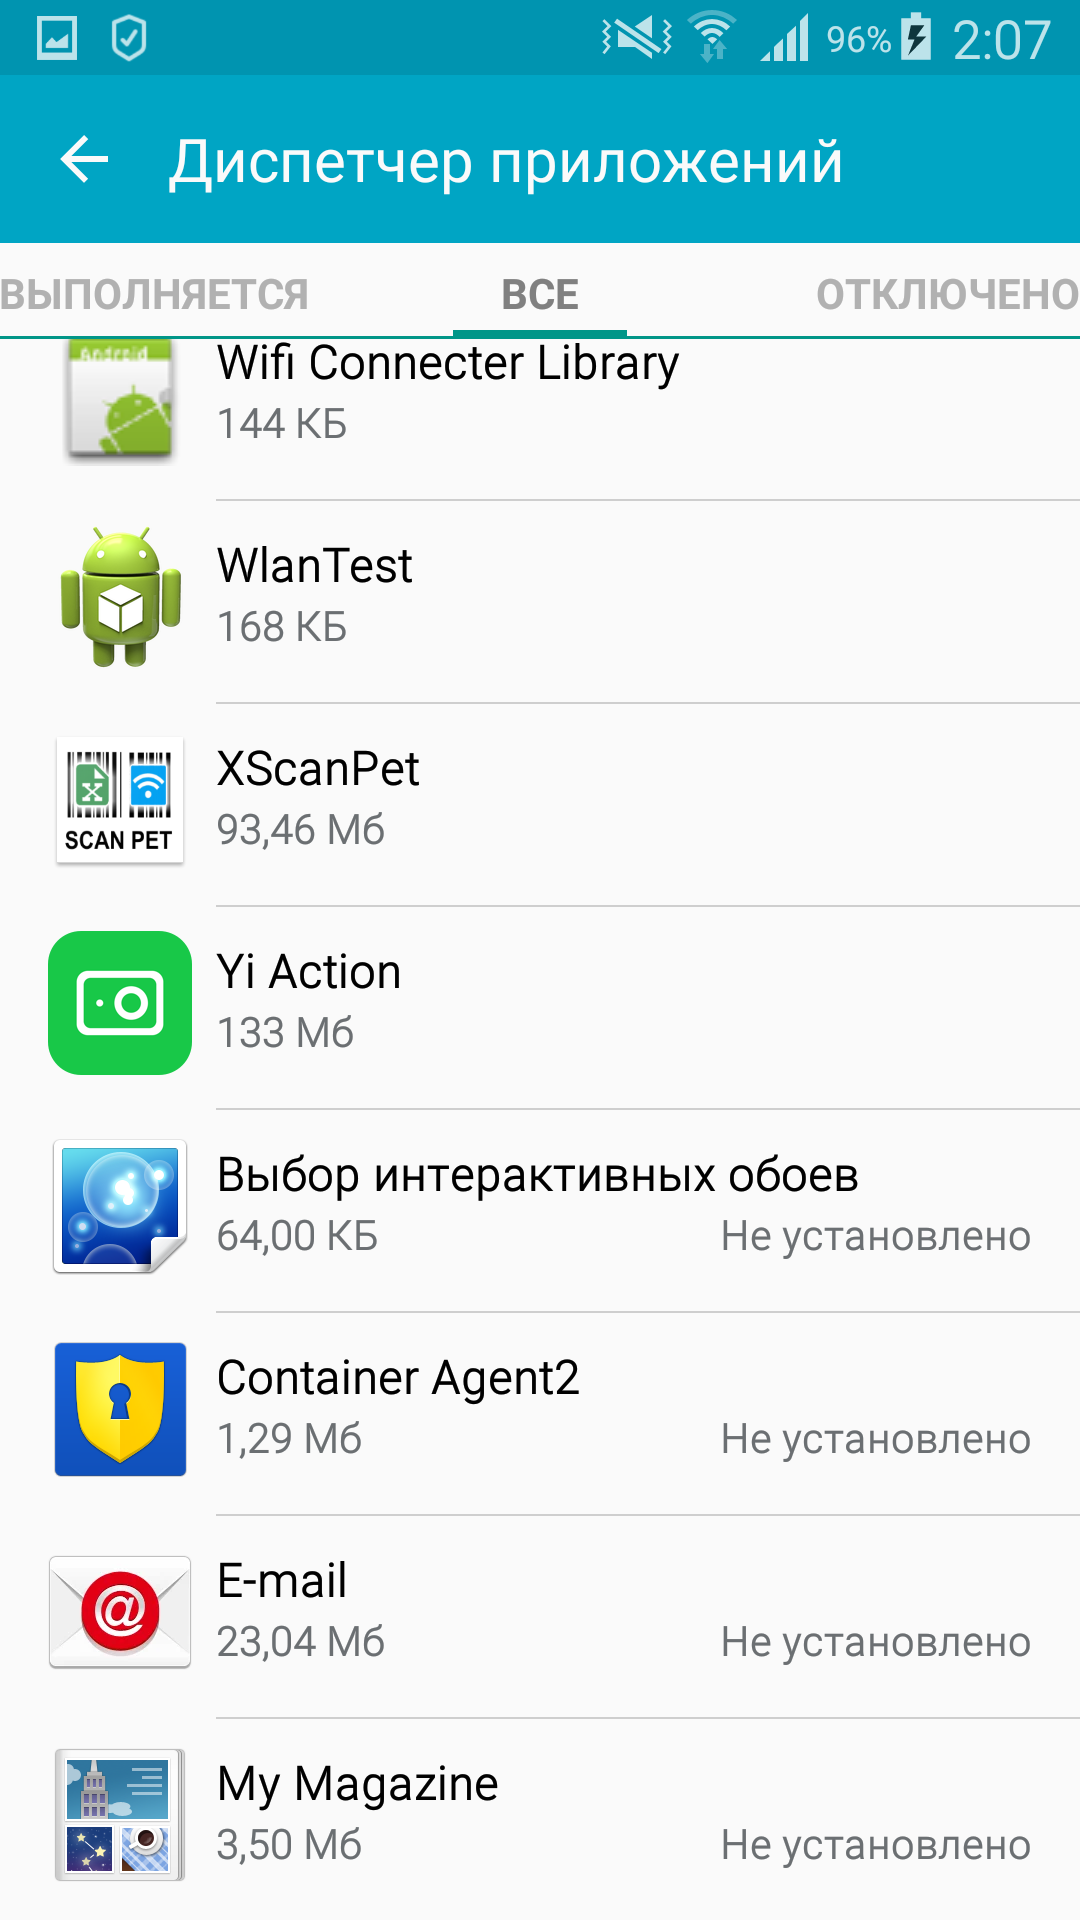 Системные приложения Android